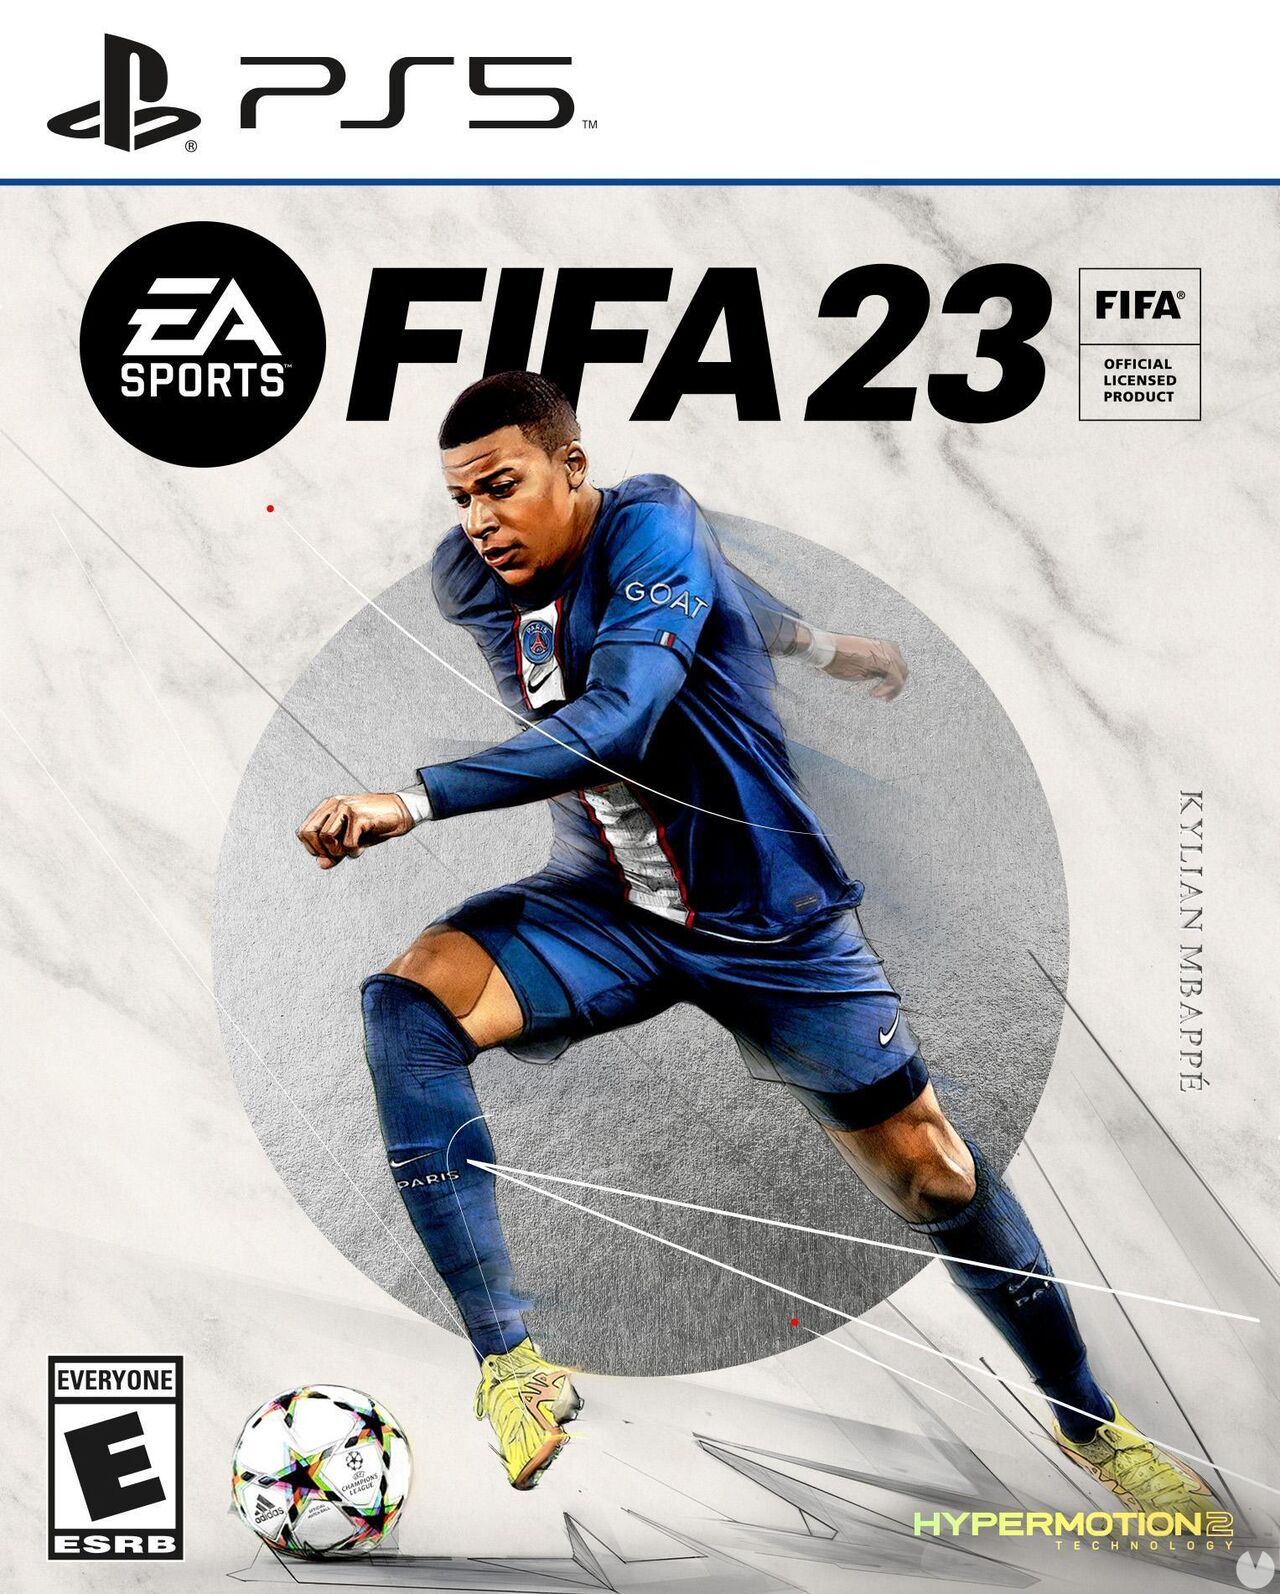 Mira la nueva portada oficial del FIFA 23 y las ediciones especiales